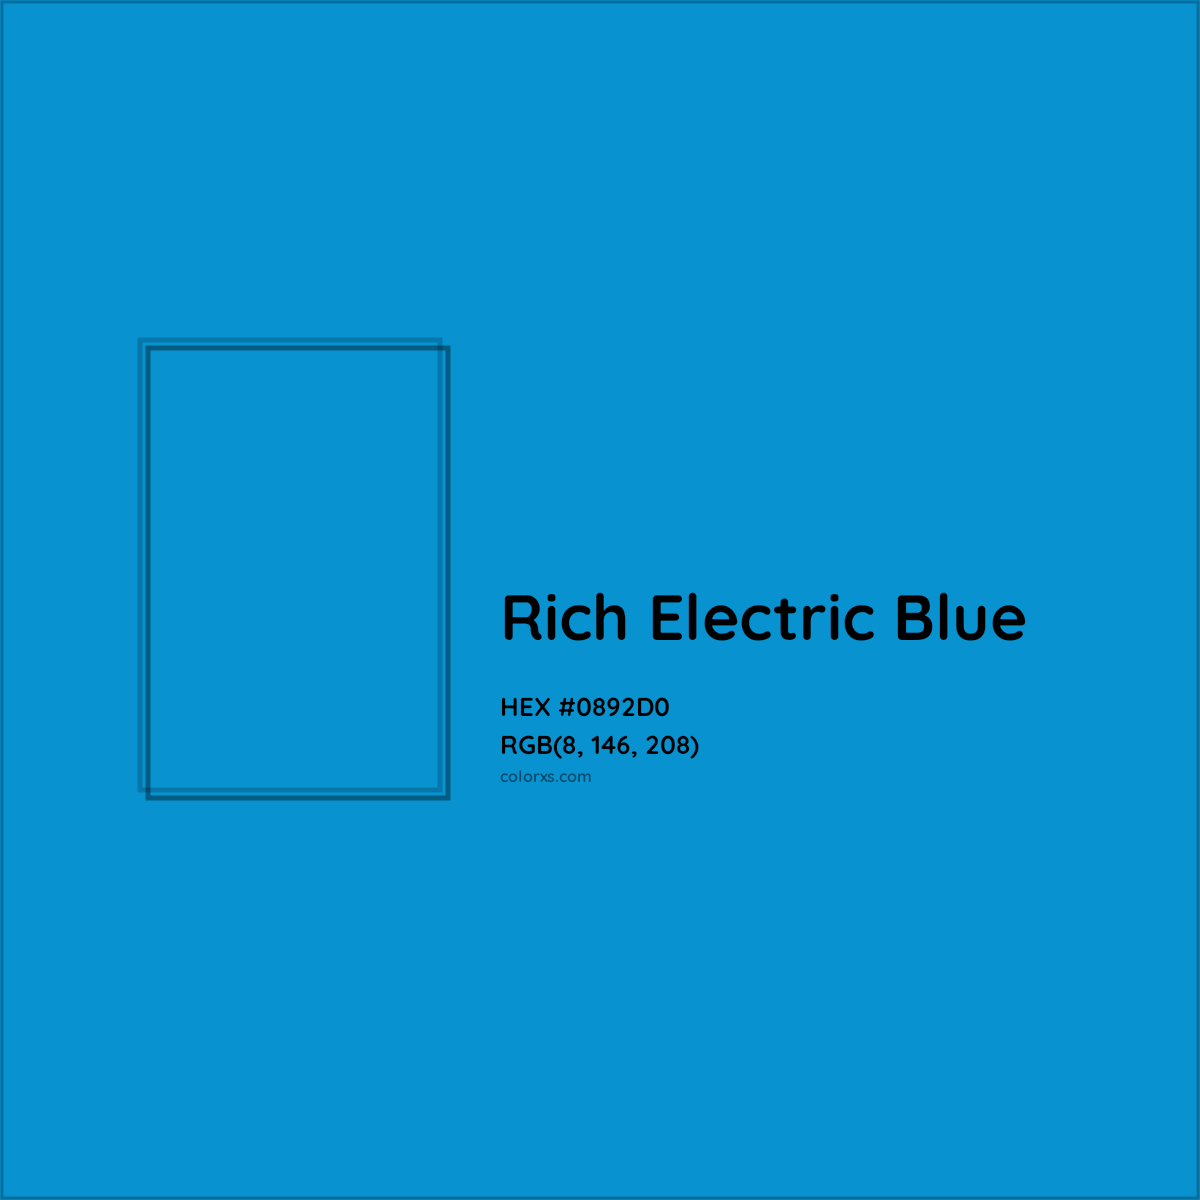 HEX #0892D0 Rich Electric Blue Color - Color Code